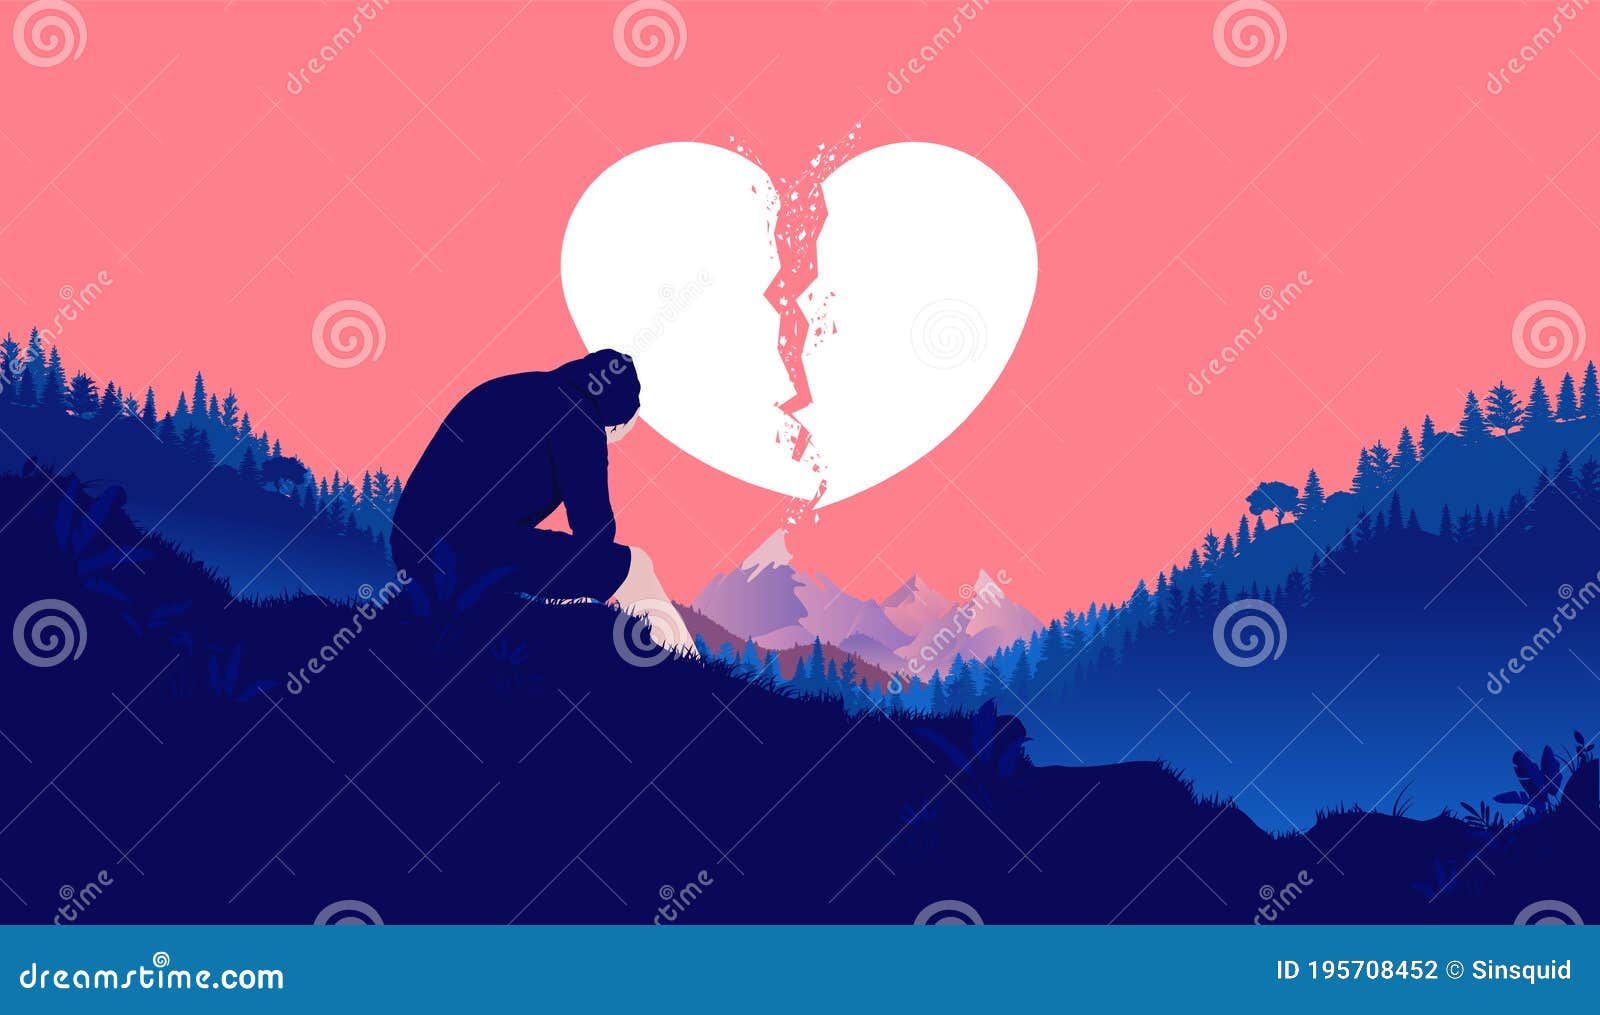 Heart Break - Heartbroken Young Man Sitting Outdoors Feeling Sad ...